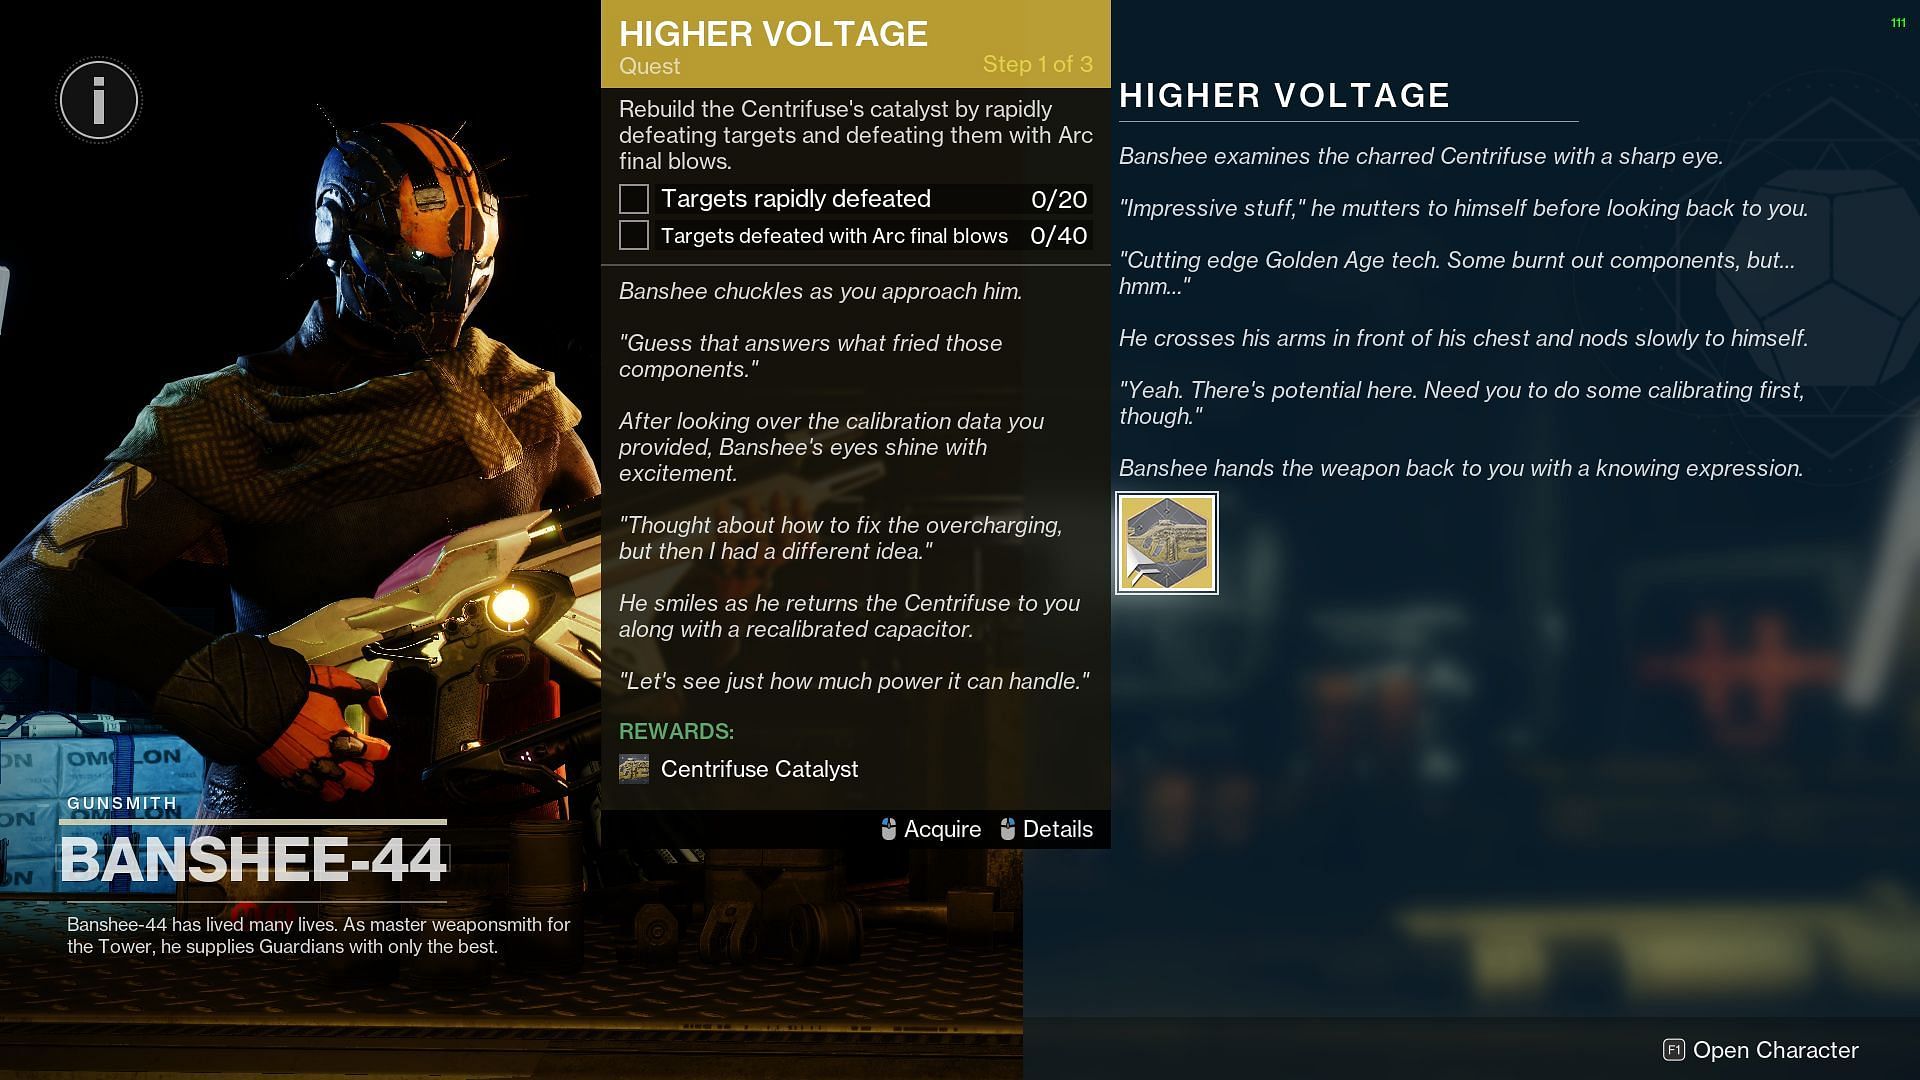 Higher Voltage (Image via Destiny 2)